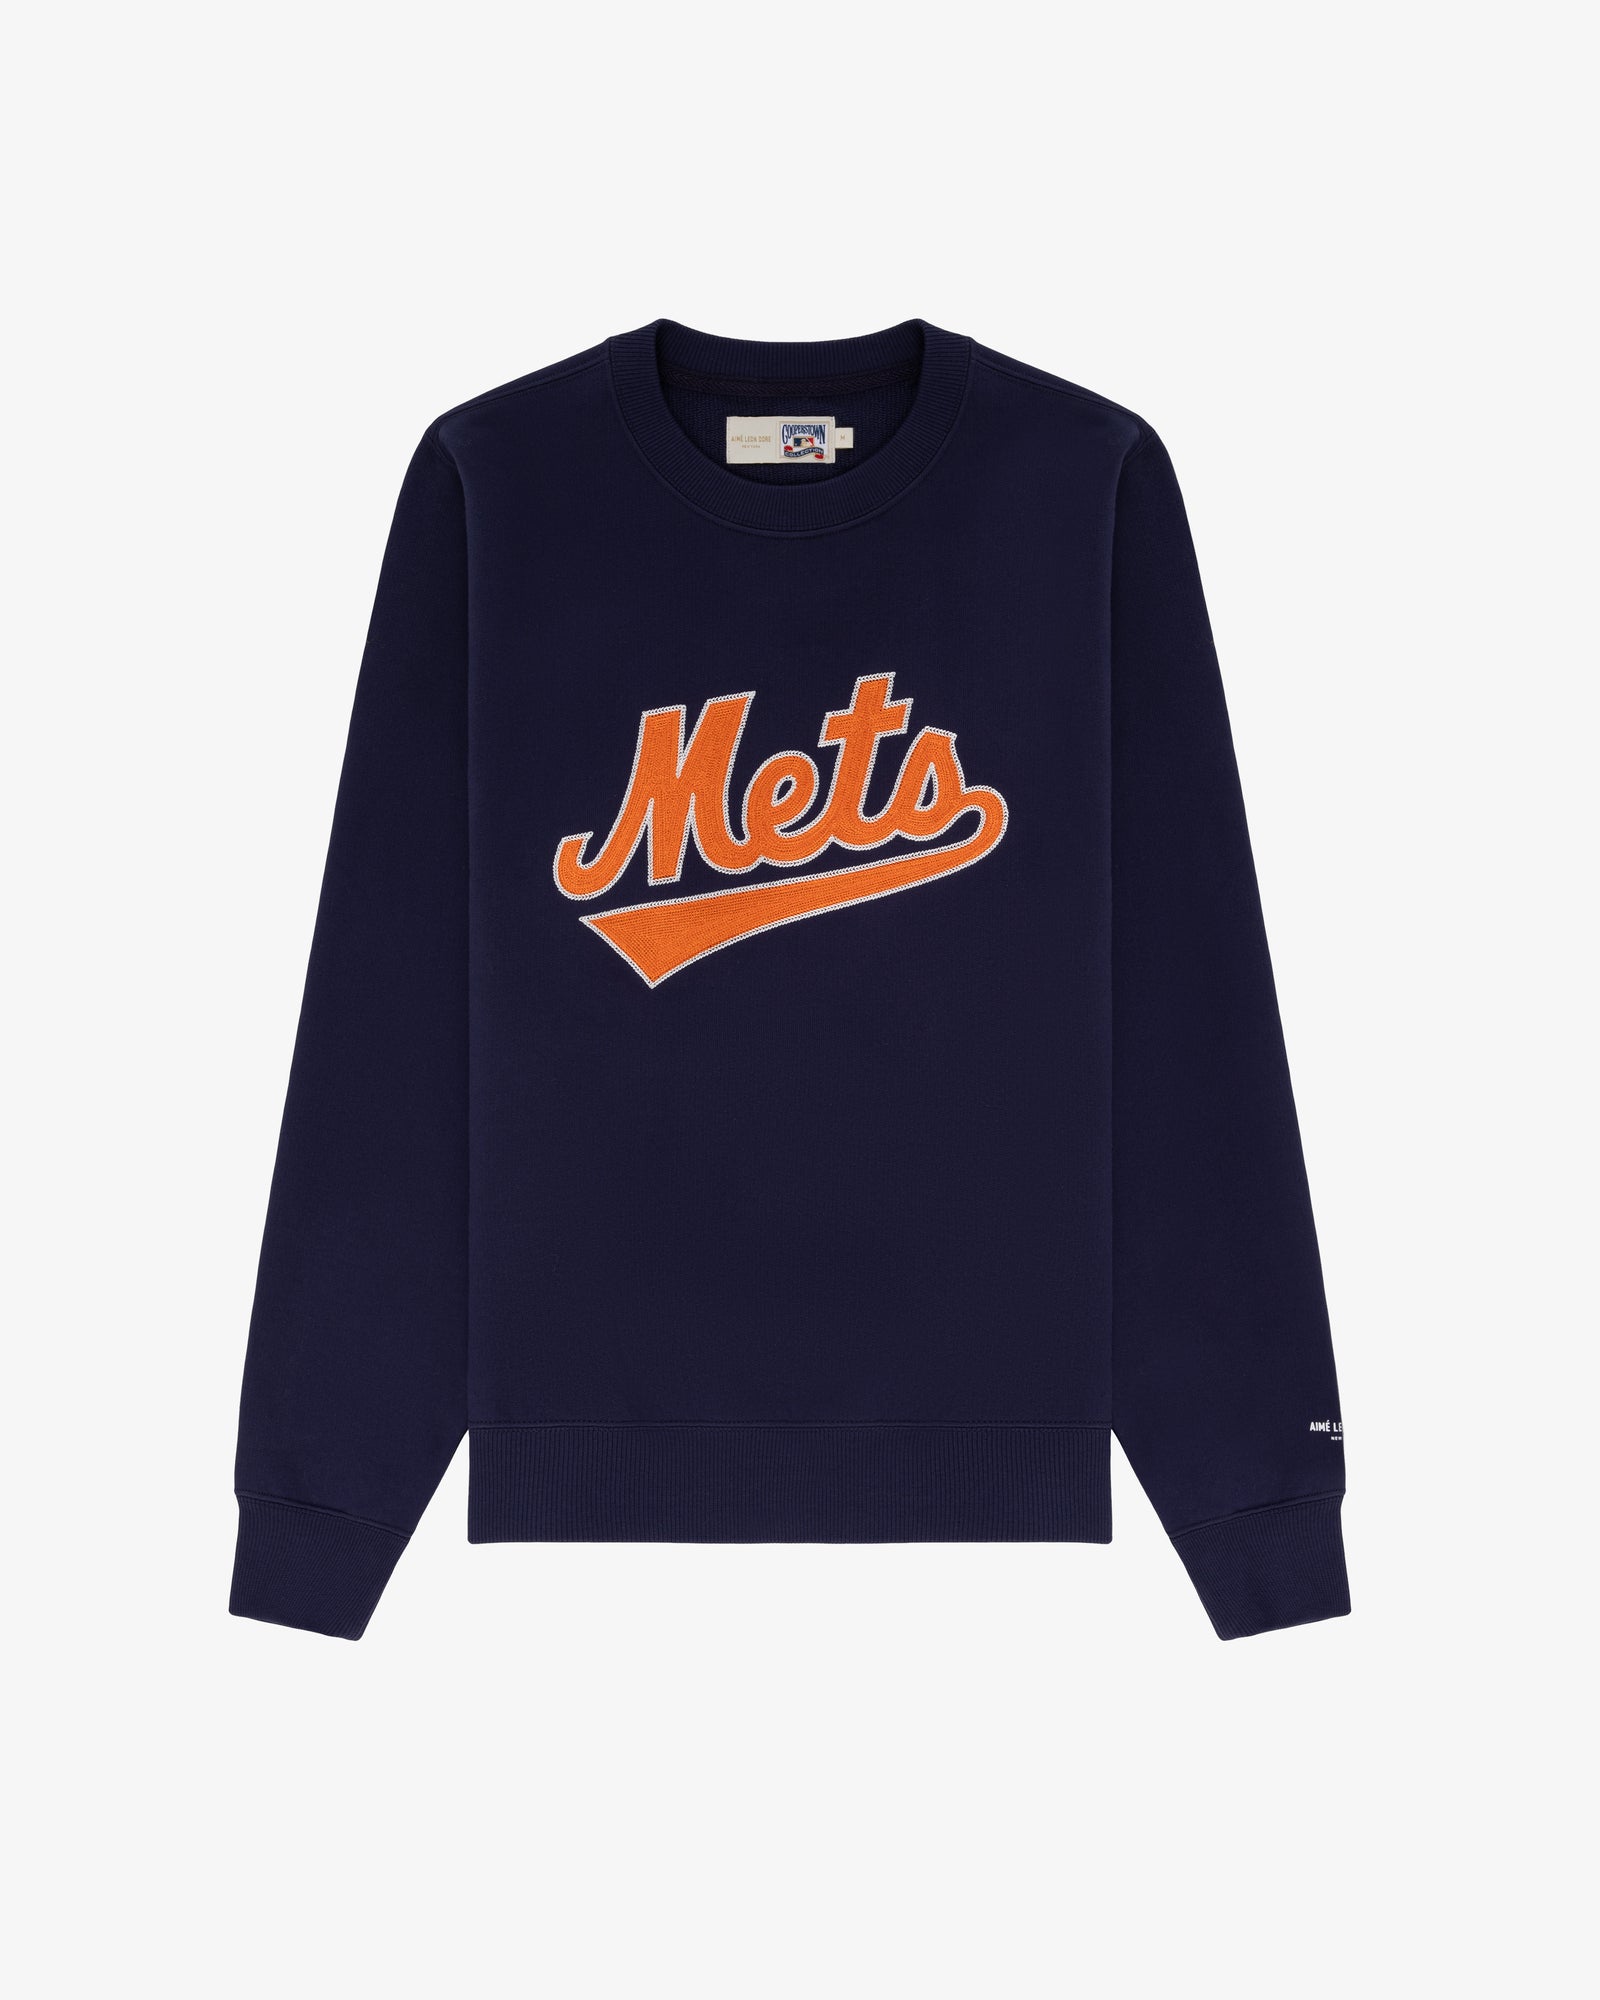 ALD / New York Mets Chainstitch Crewneck  Sweatshirt